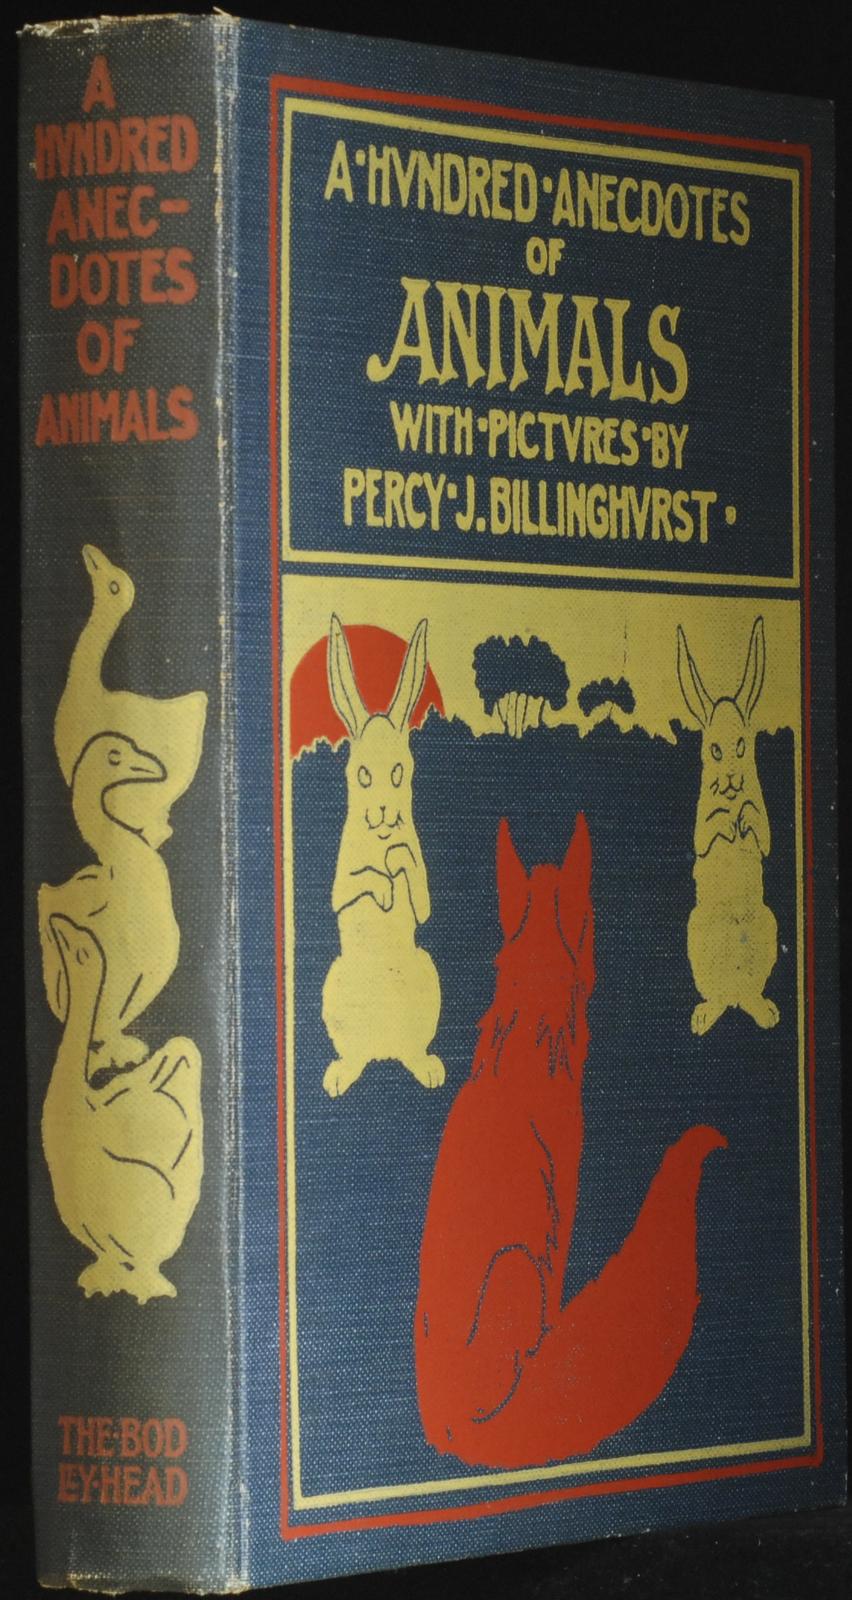 mbb006738c_-_Billinghurst_Percy_J_-_A_Hundred_Anecdotes_Of_Animals_-_PERCY_J_BILLINGHURST.jpg